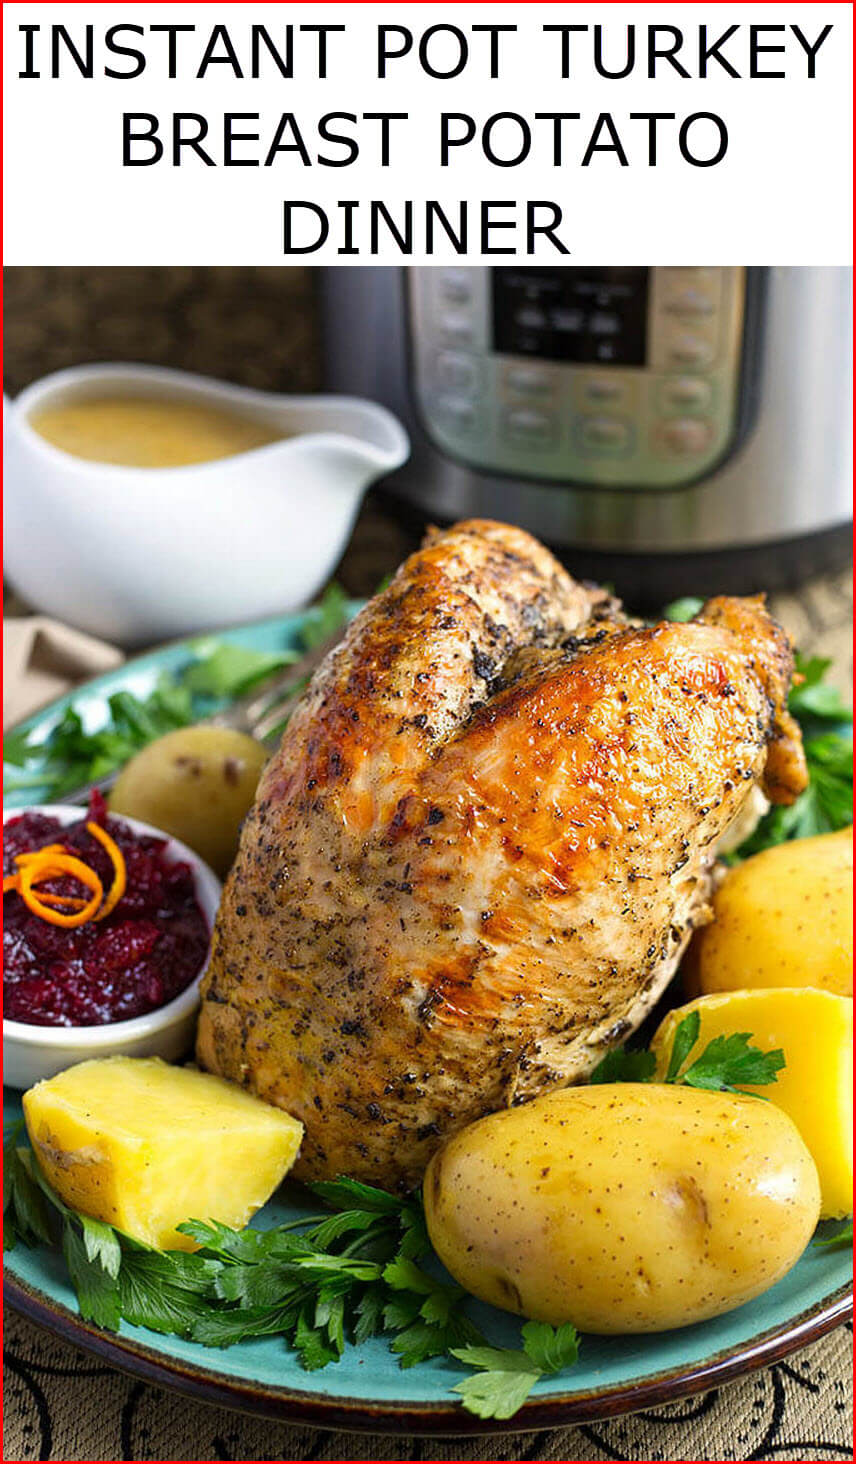 Instant Pot Recipes Turkey | Instant Pot Recipes – Most Popular And ...